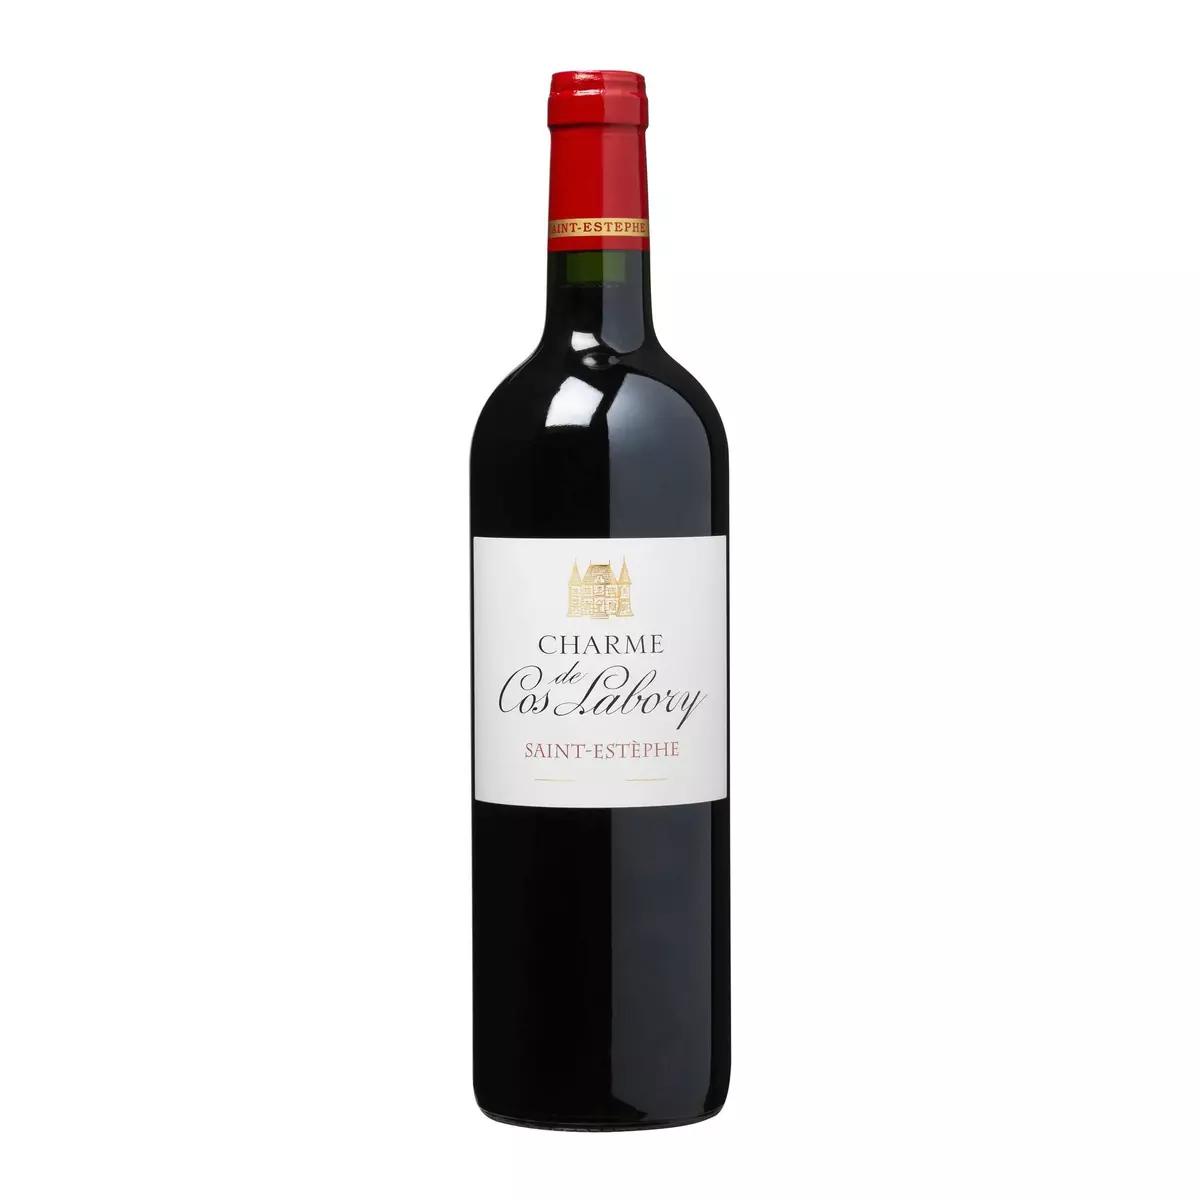 Vin rouge AOP Saint-Estèphe Charme de Cos Labory second vin du Château Labory 2016 75cl